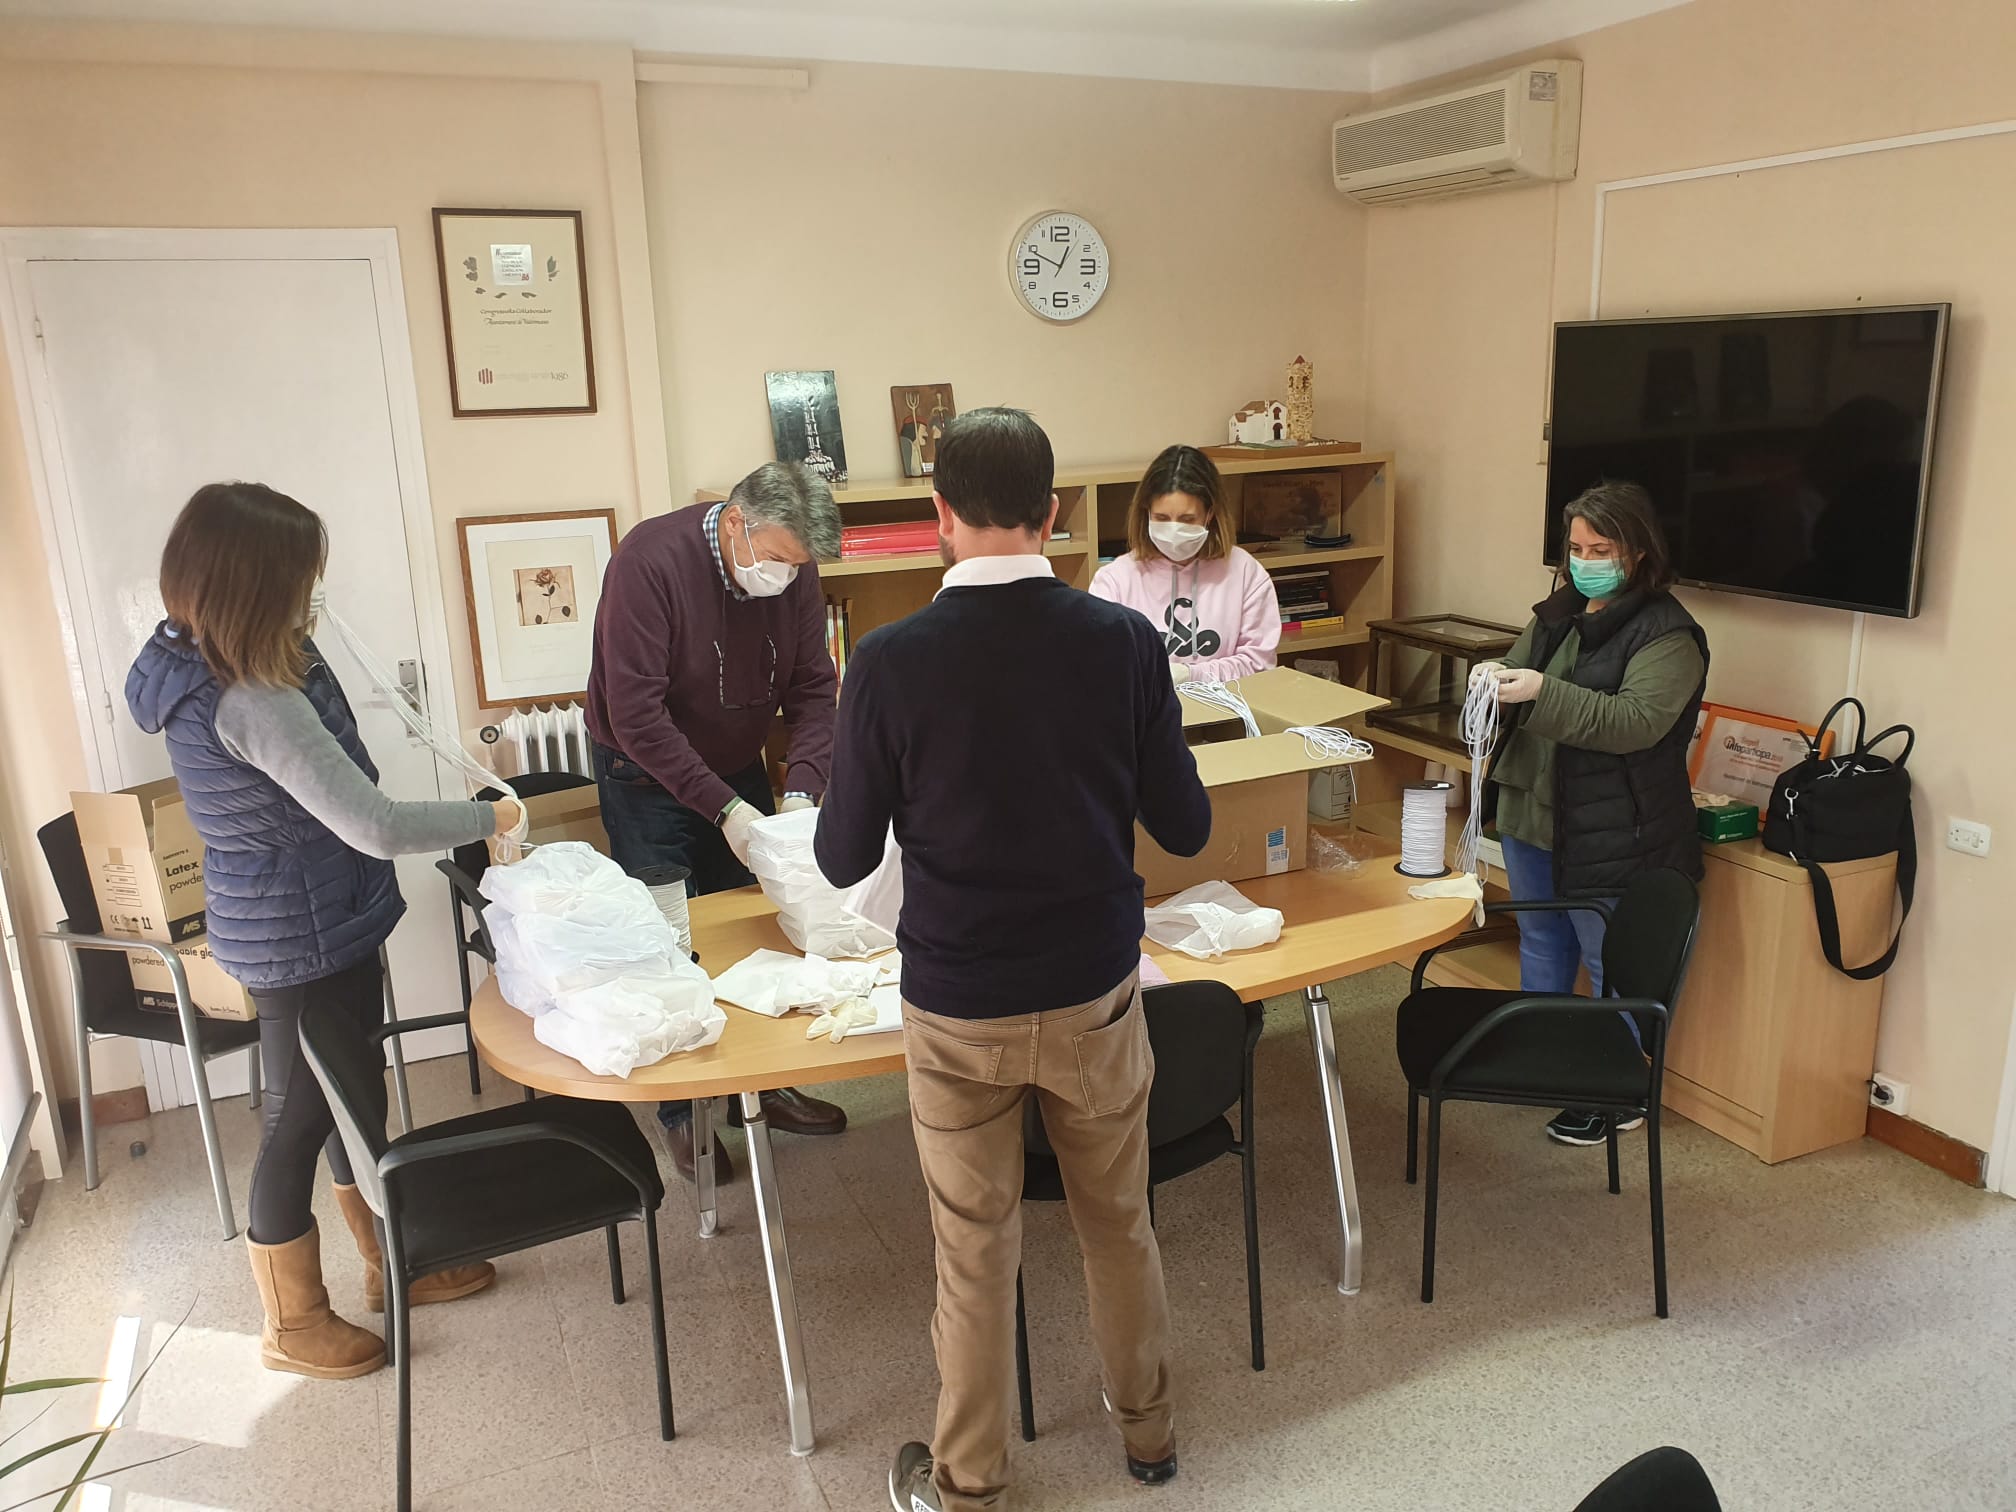 Membres del govern municipal de Vallromanes preparen el material per portar-lo a casa dels voluntaris